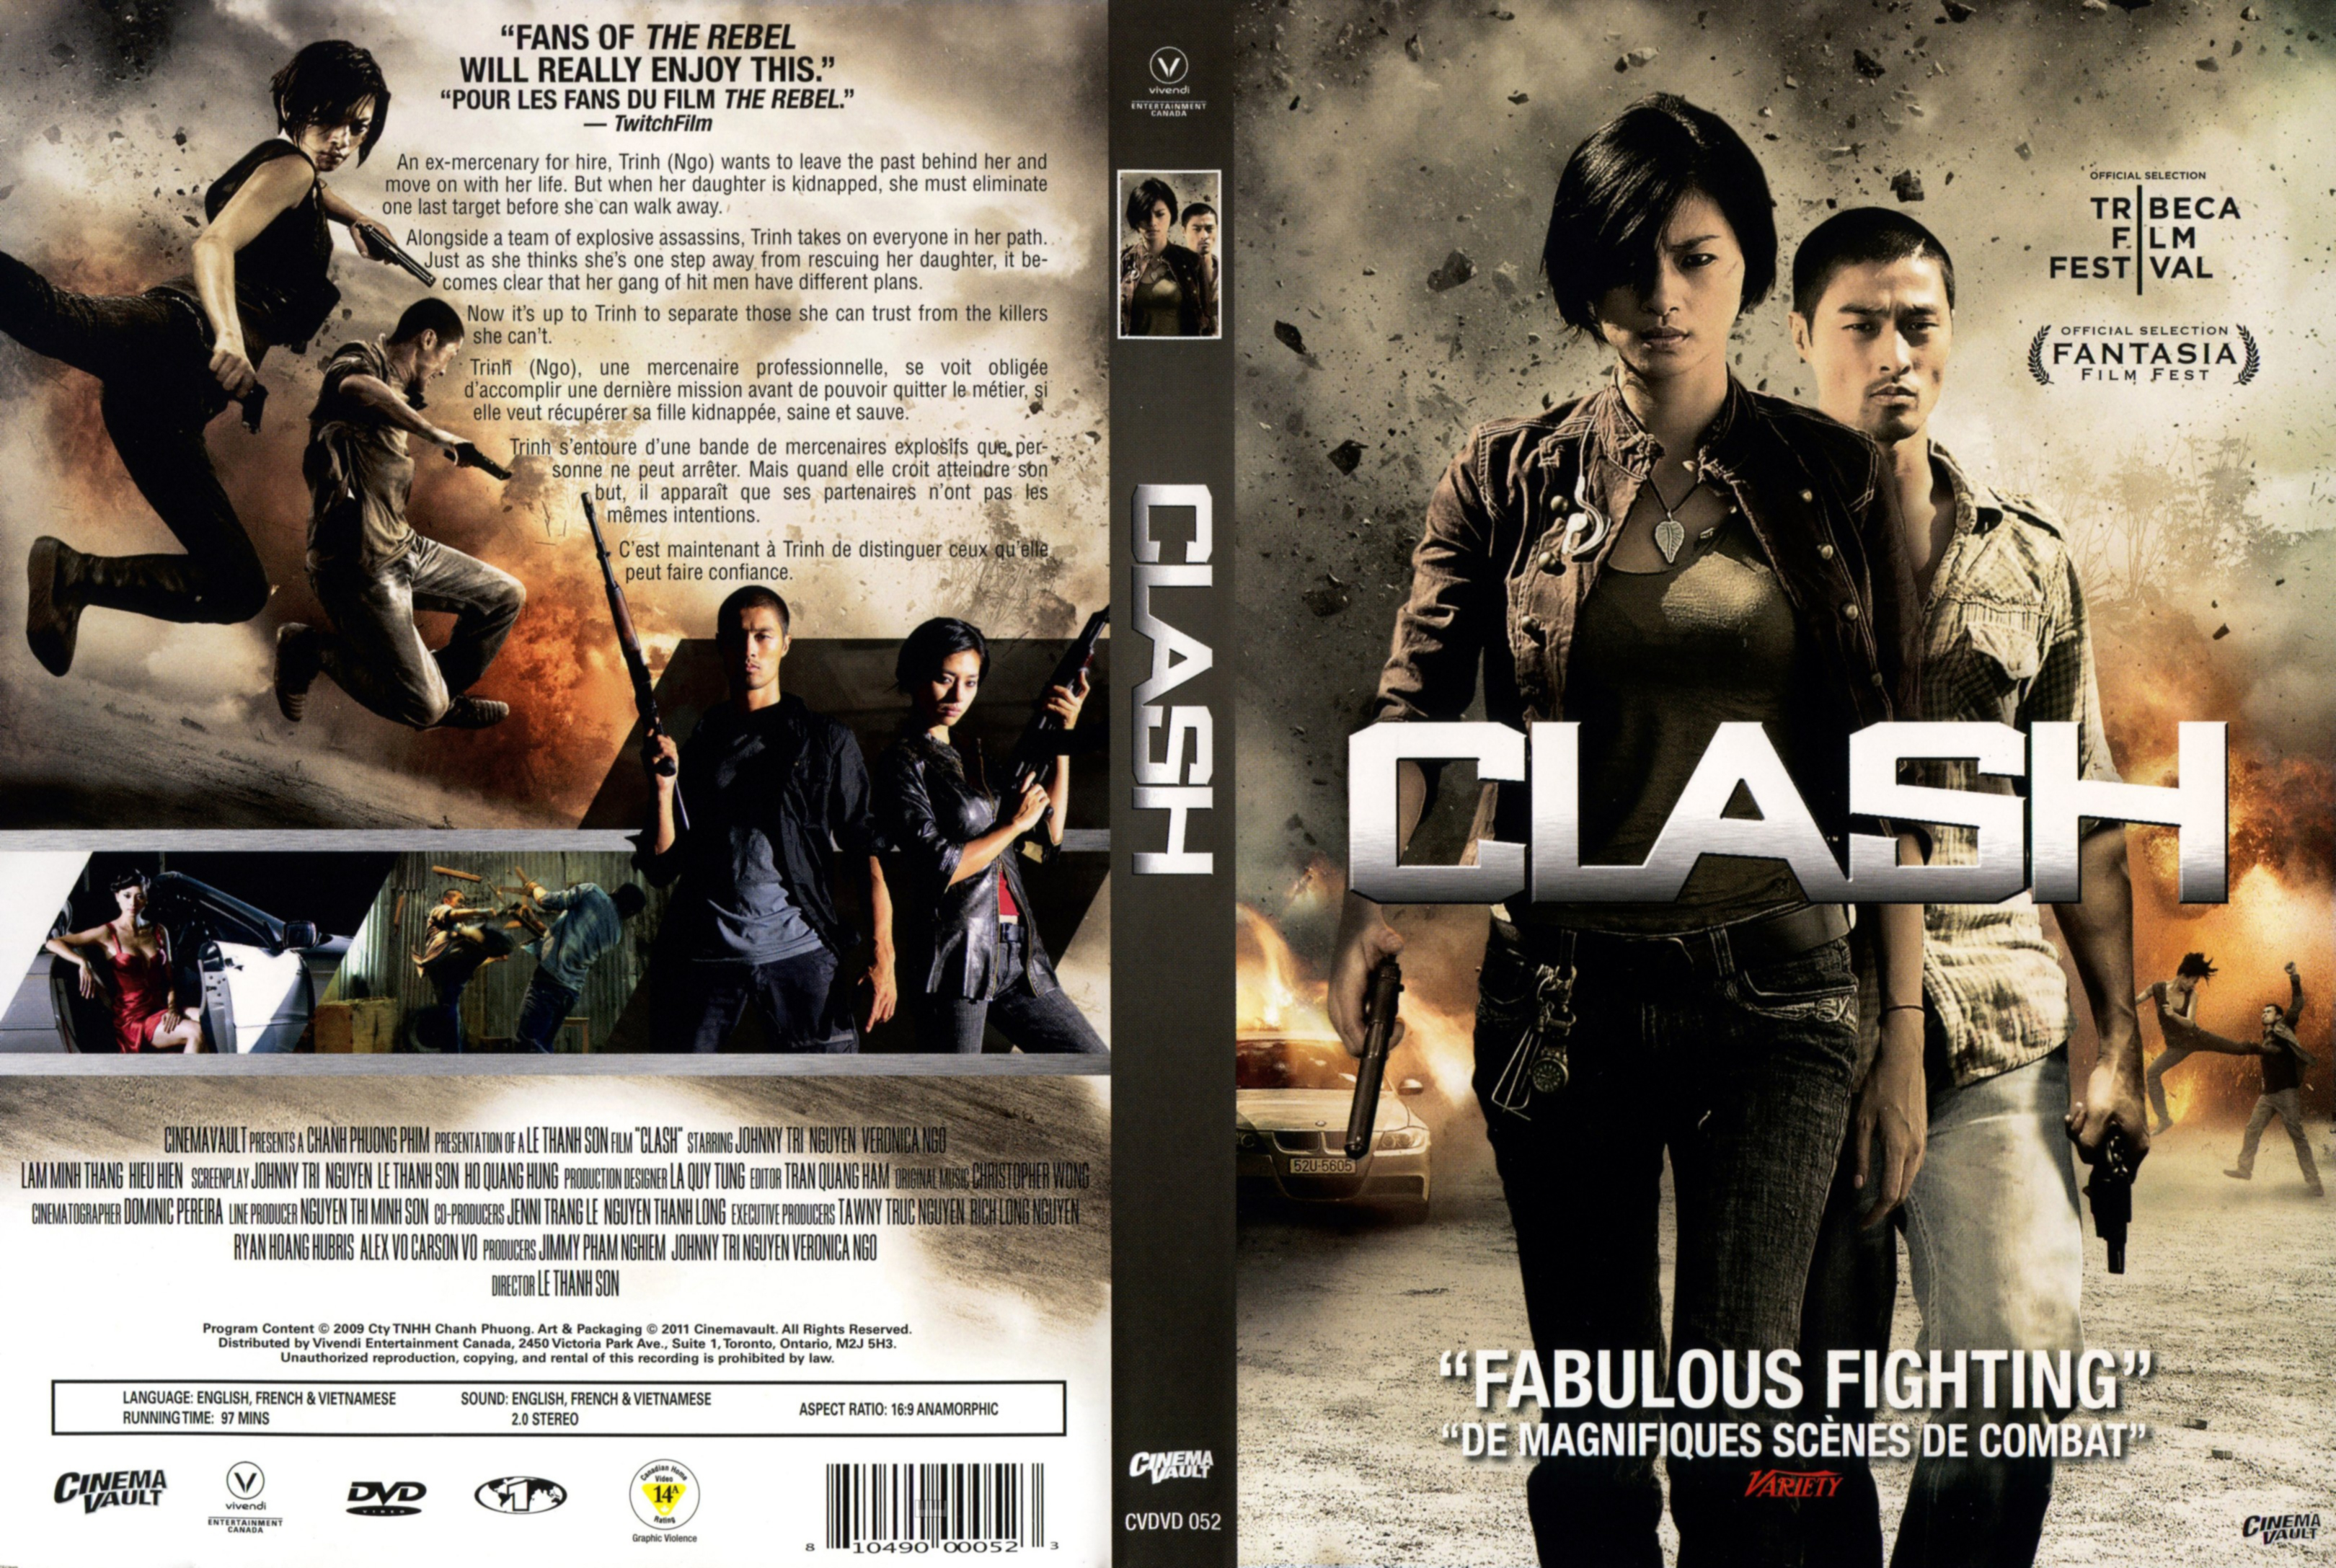 Jaquette DVD Clash (Canadienne)